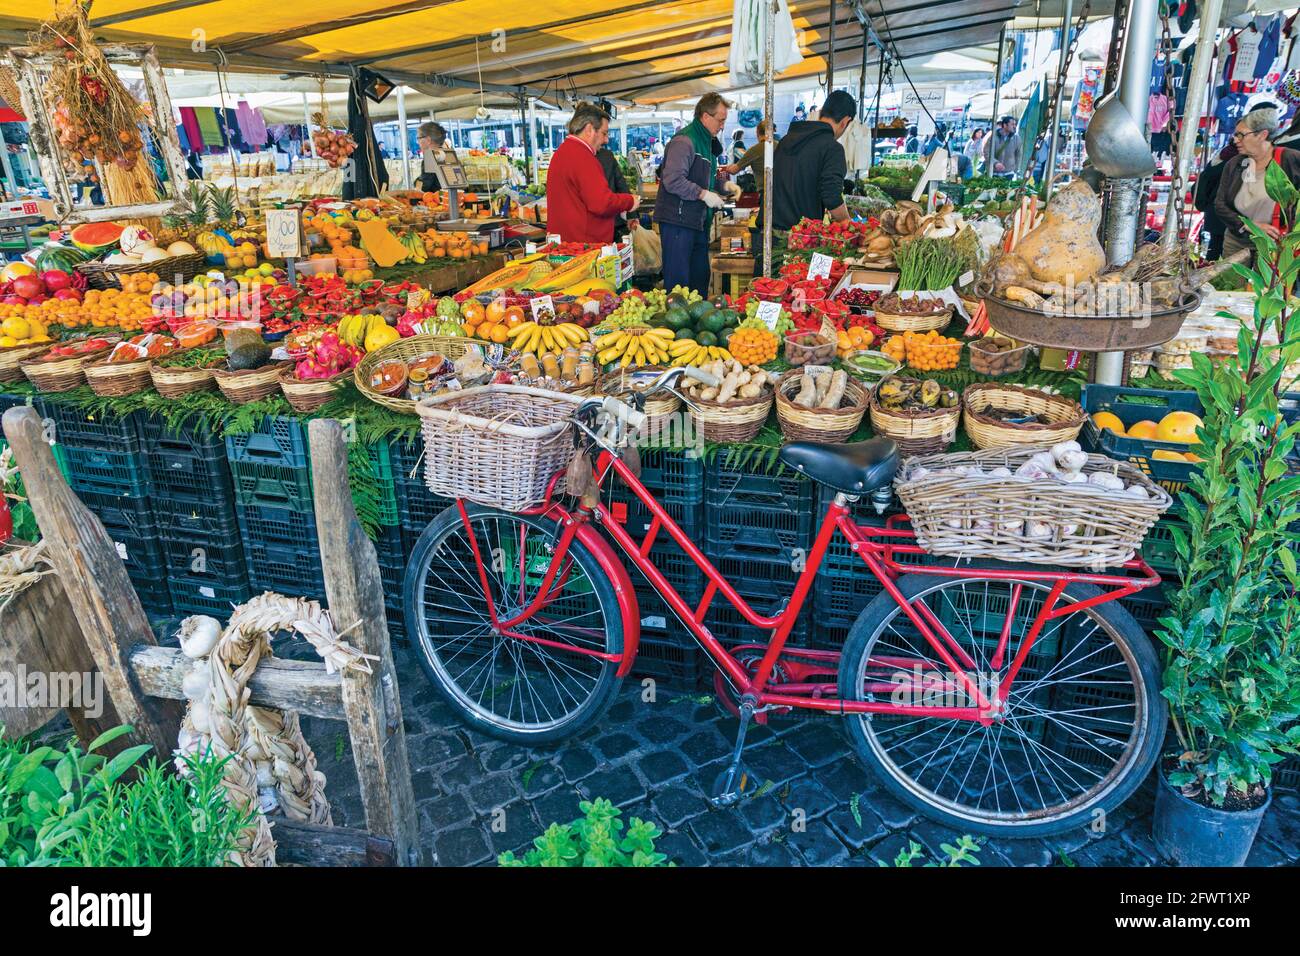 Roma, Italia. Bancarella di frutta e verdura presso il mercato giornaliero del campo dei Fiori. Il centro storico di Roma è patrimonio dell'umanità dell'UNESCO. Foto Stock